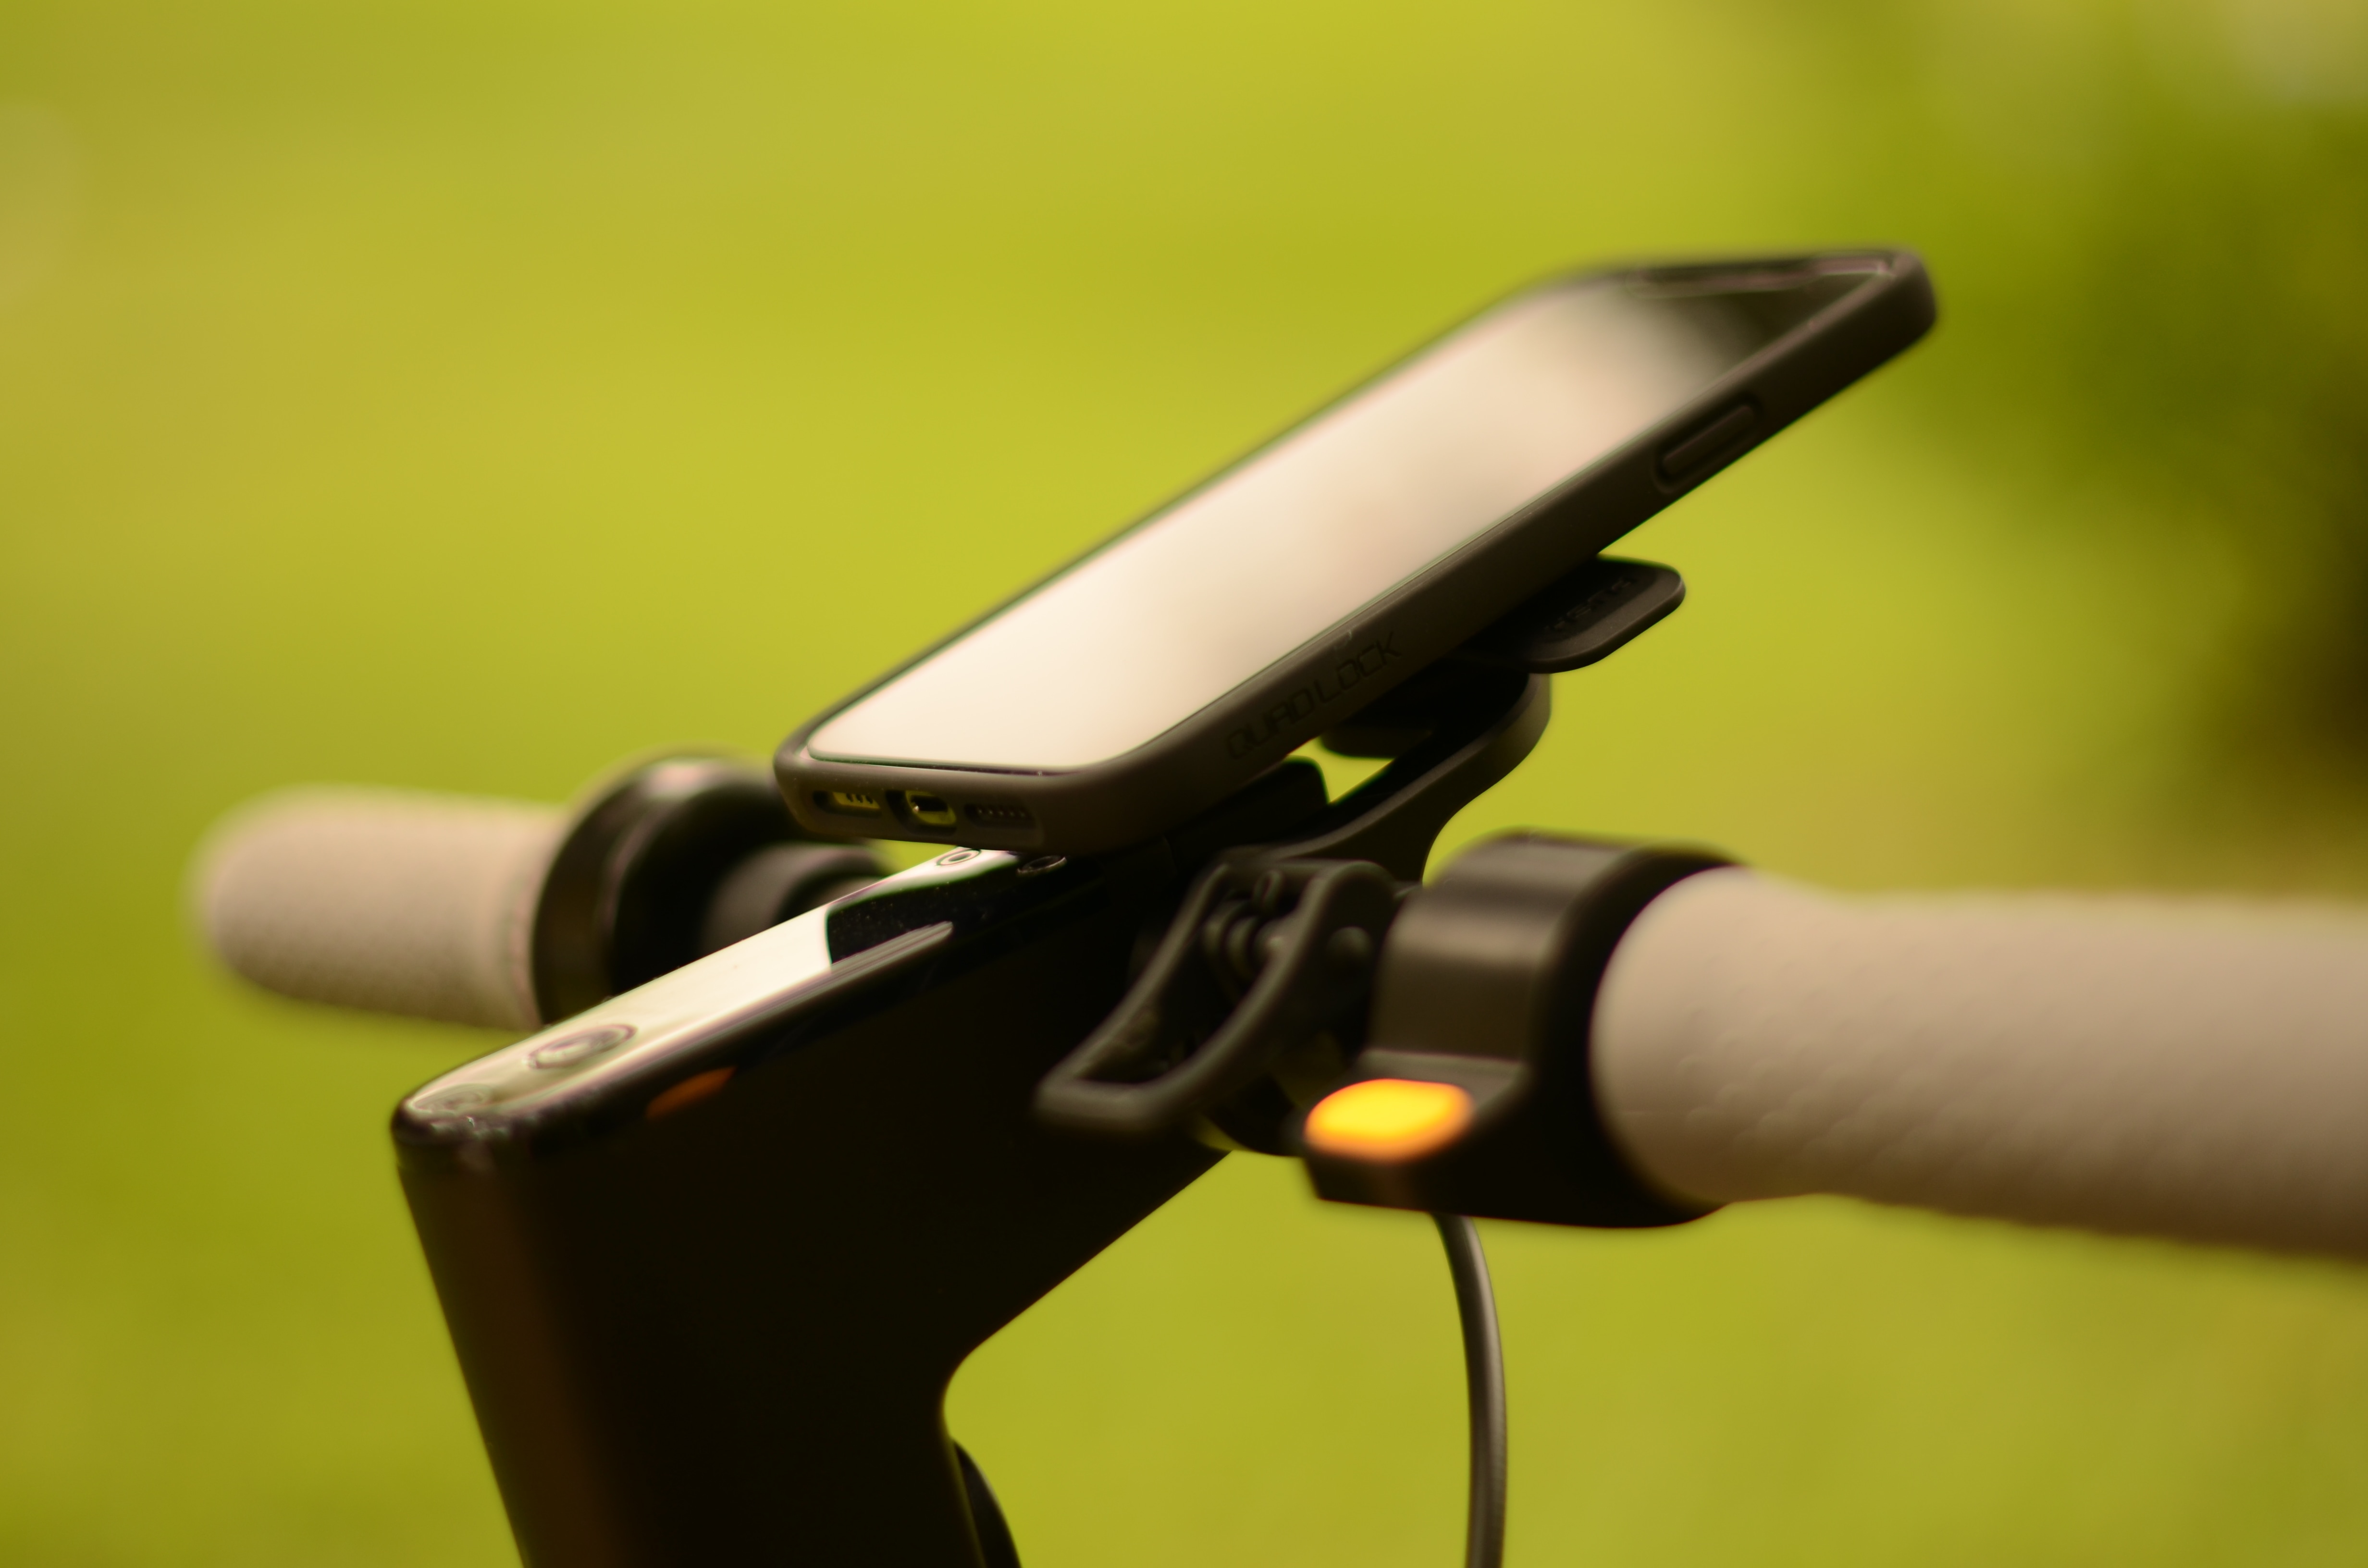 Fácil ajuste duro duro caso para Montaje Manillar Moto Bicicleta iPhone 7 4.7" 